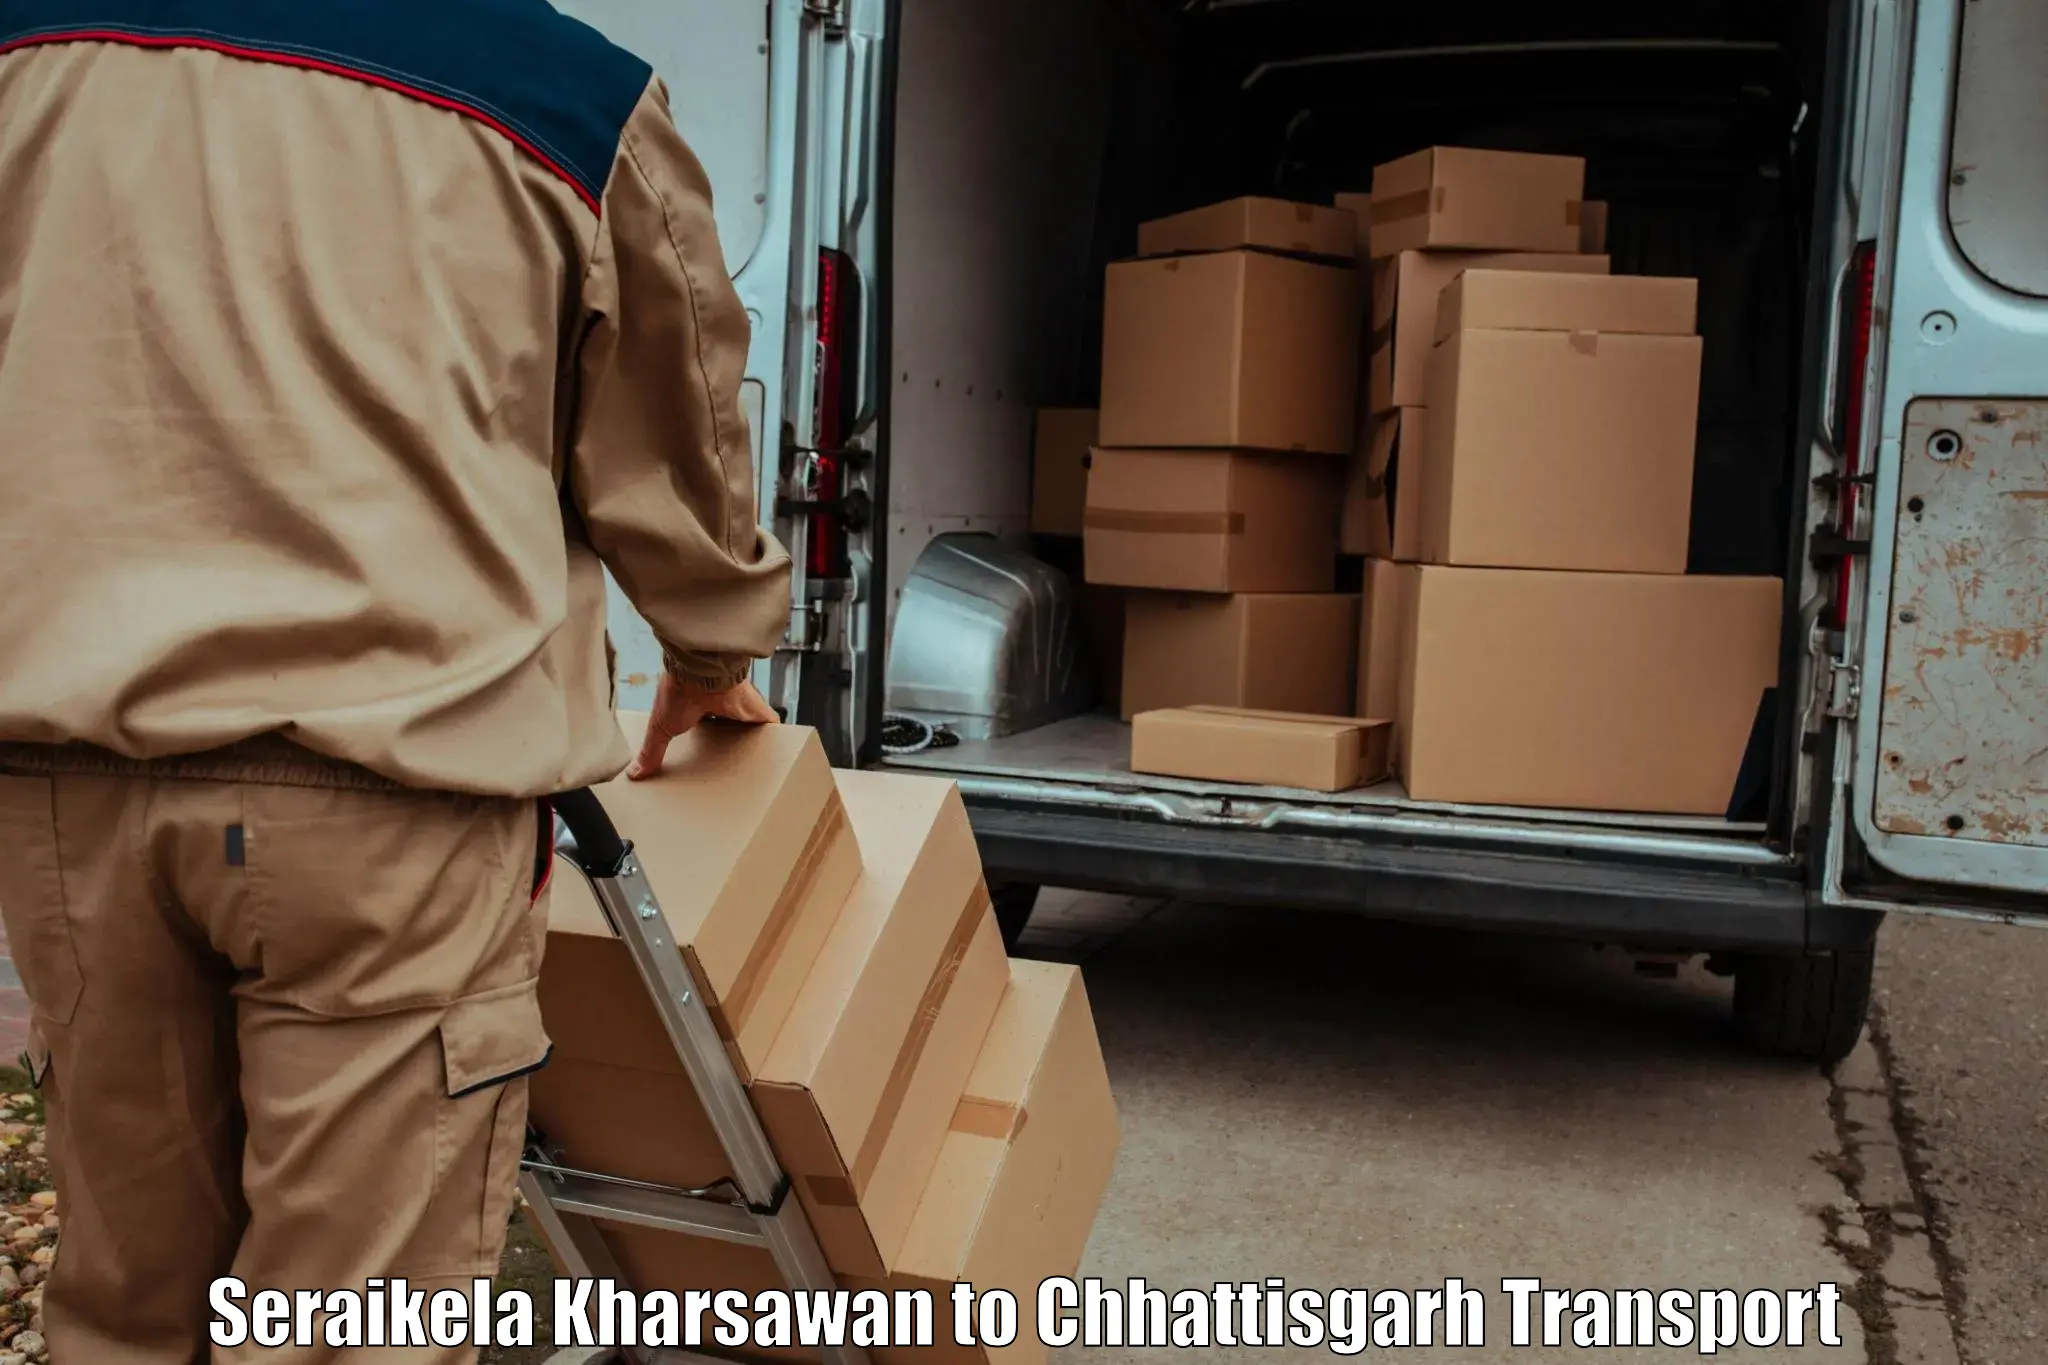 Parcel transport services Seraikela Kharsawan to Mahasamund